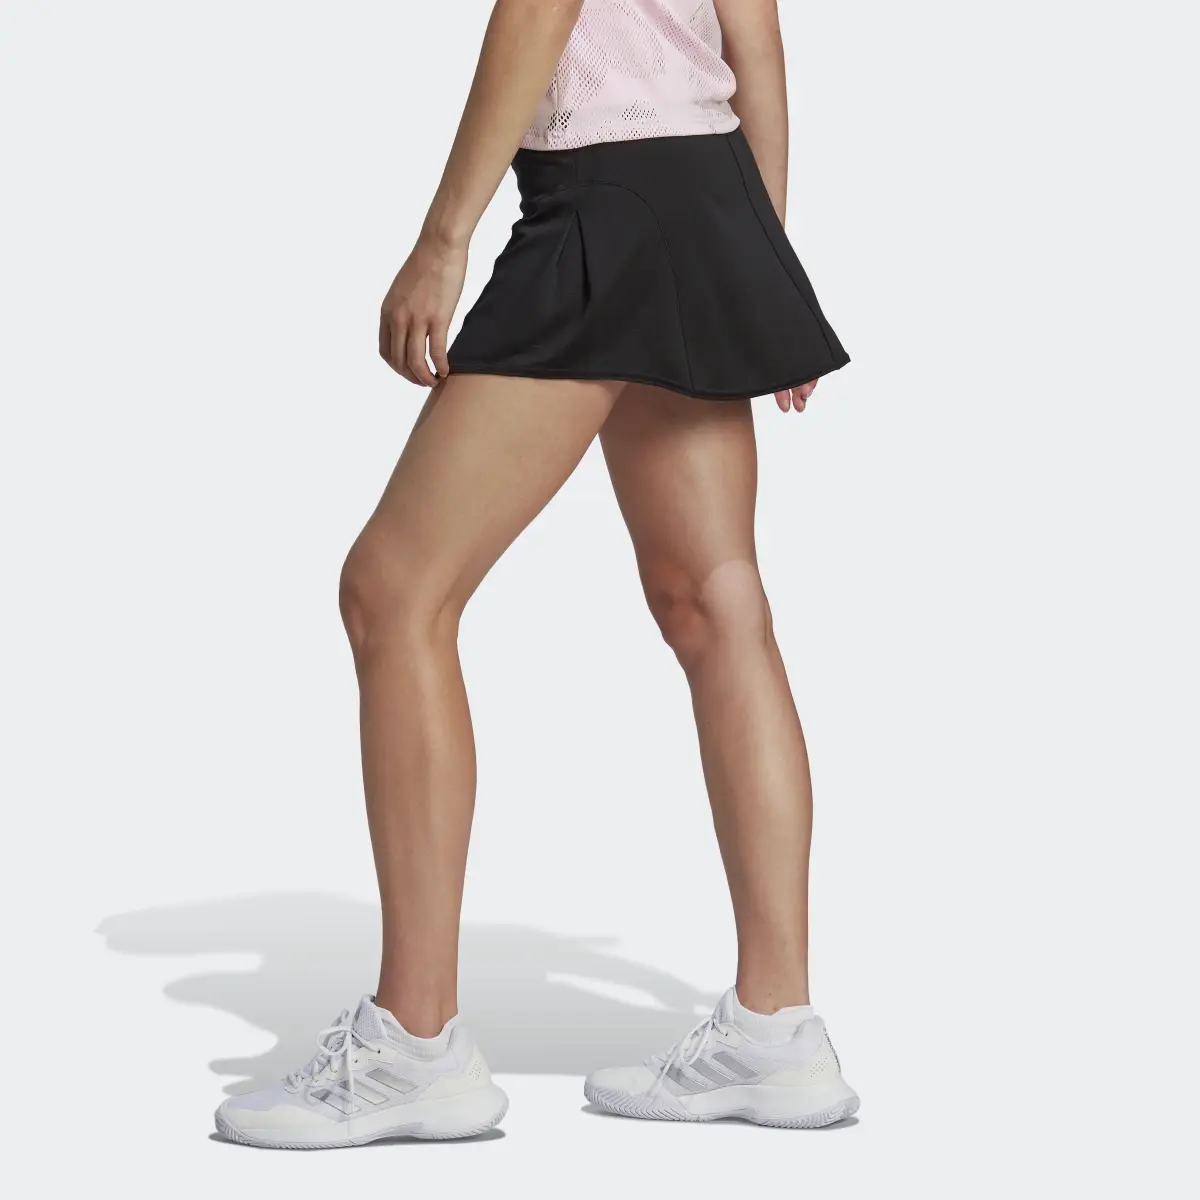 Adidas Tennis Match Skirt. 2